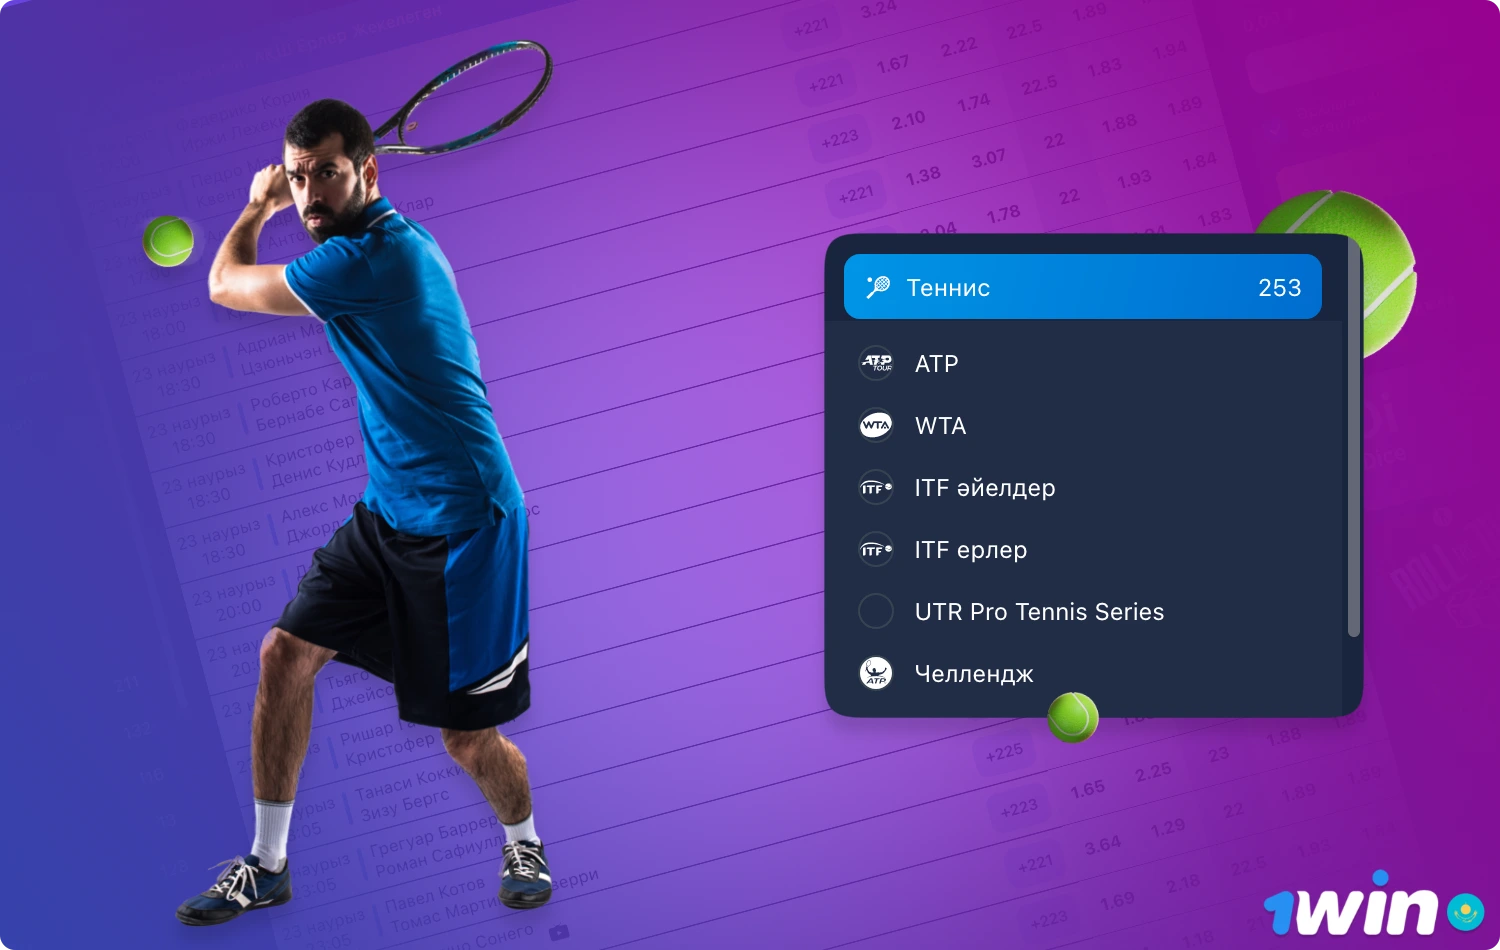 1win предлагает различные варианты ставок на теннис